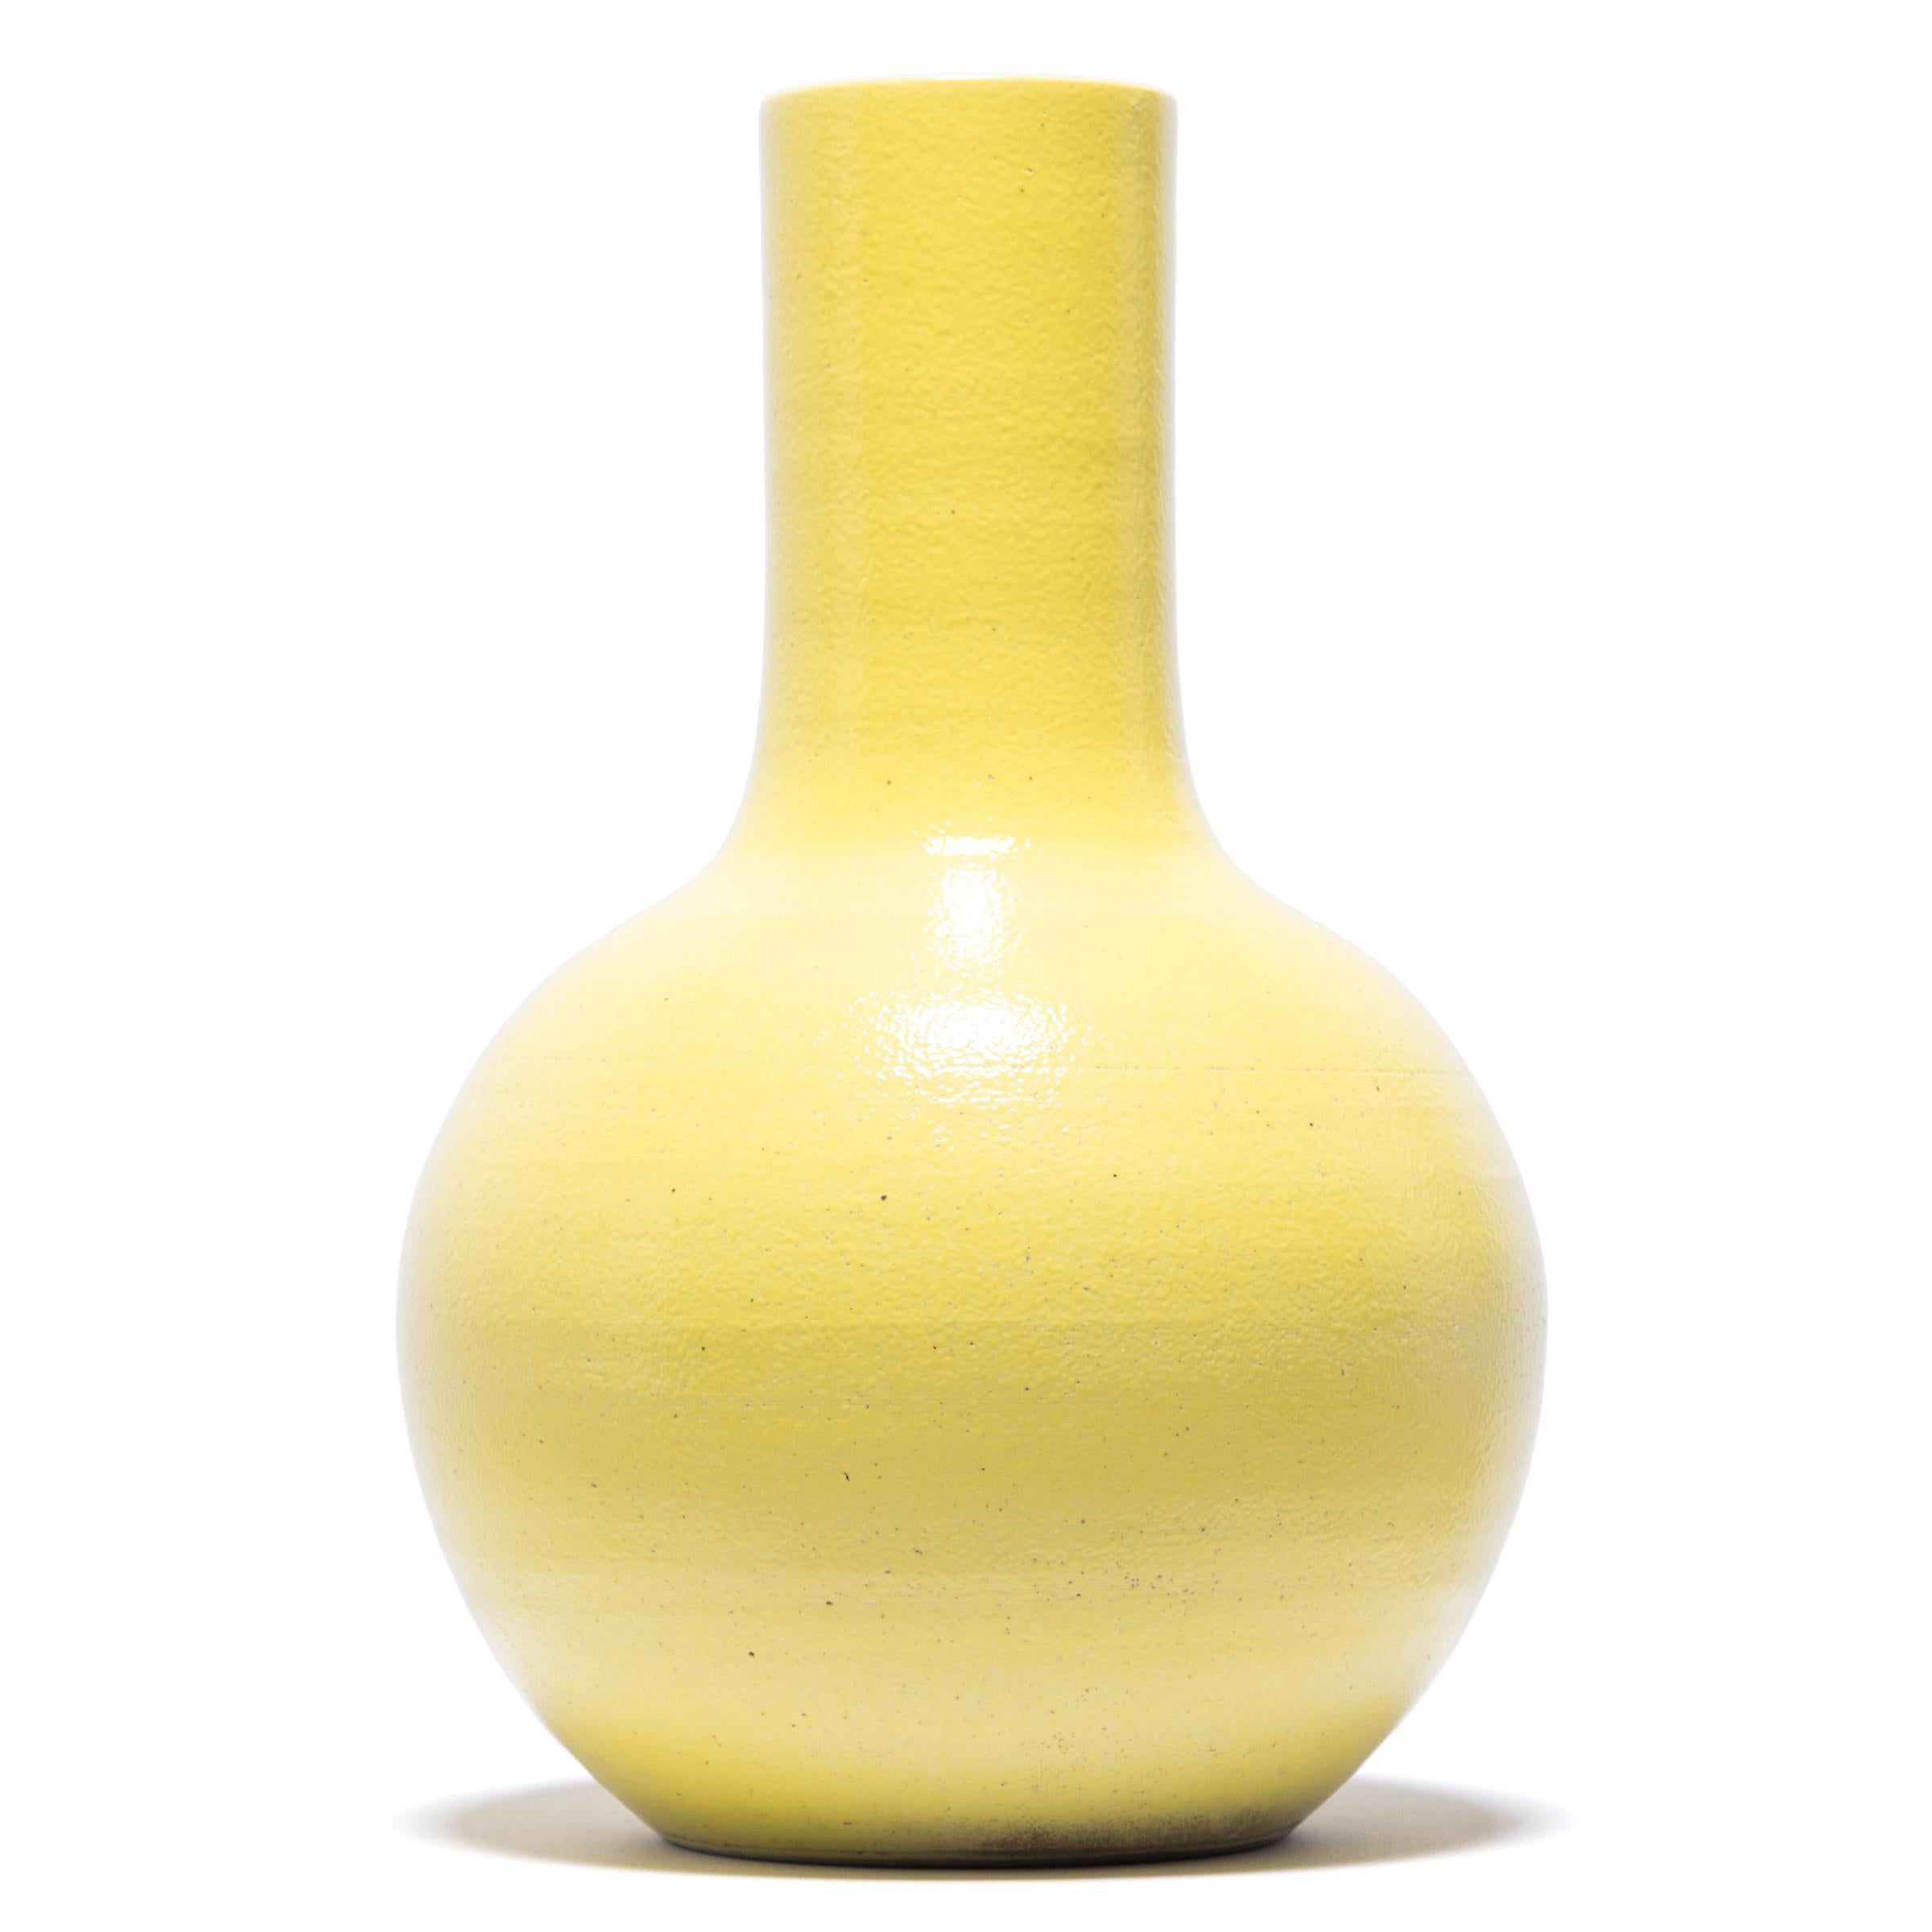 S'inspirant d'une longue tradition chinoise de céramiques monochromes, ce grand vase à col de cygne est recouvert d'une glaçure jaune citron. Le vase présente un corps arrondi et globulaire et un col cylindrique étroit, une forme classique connue